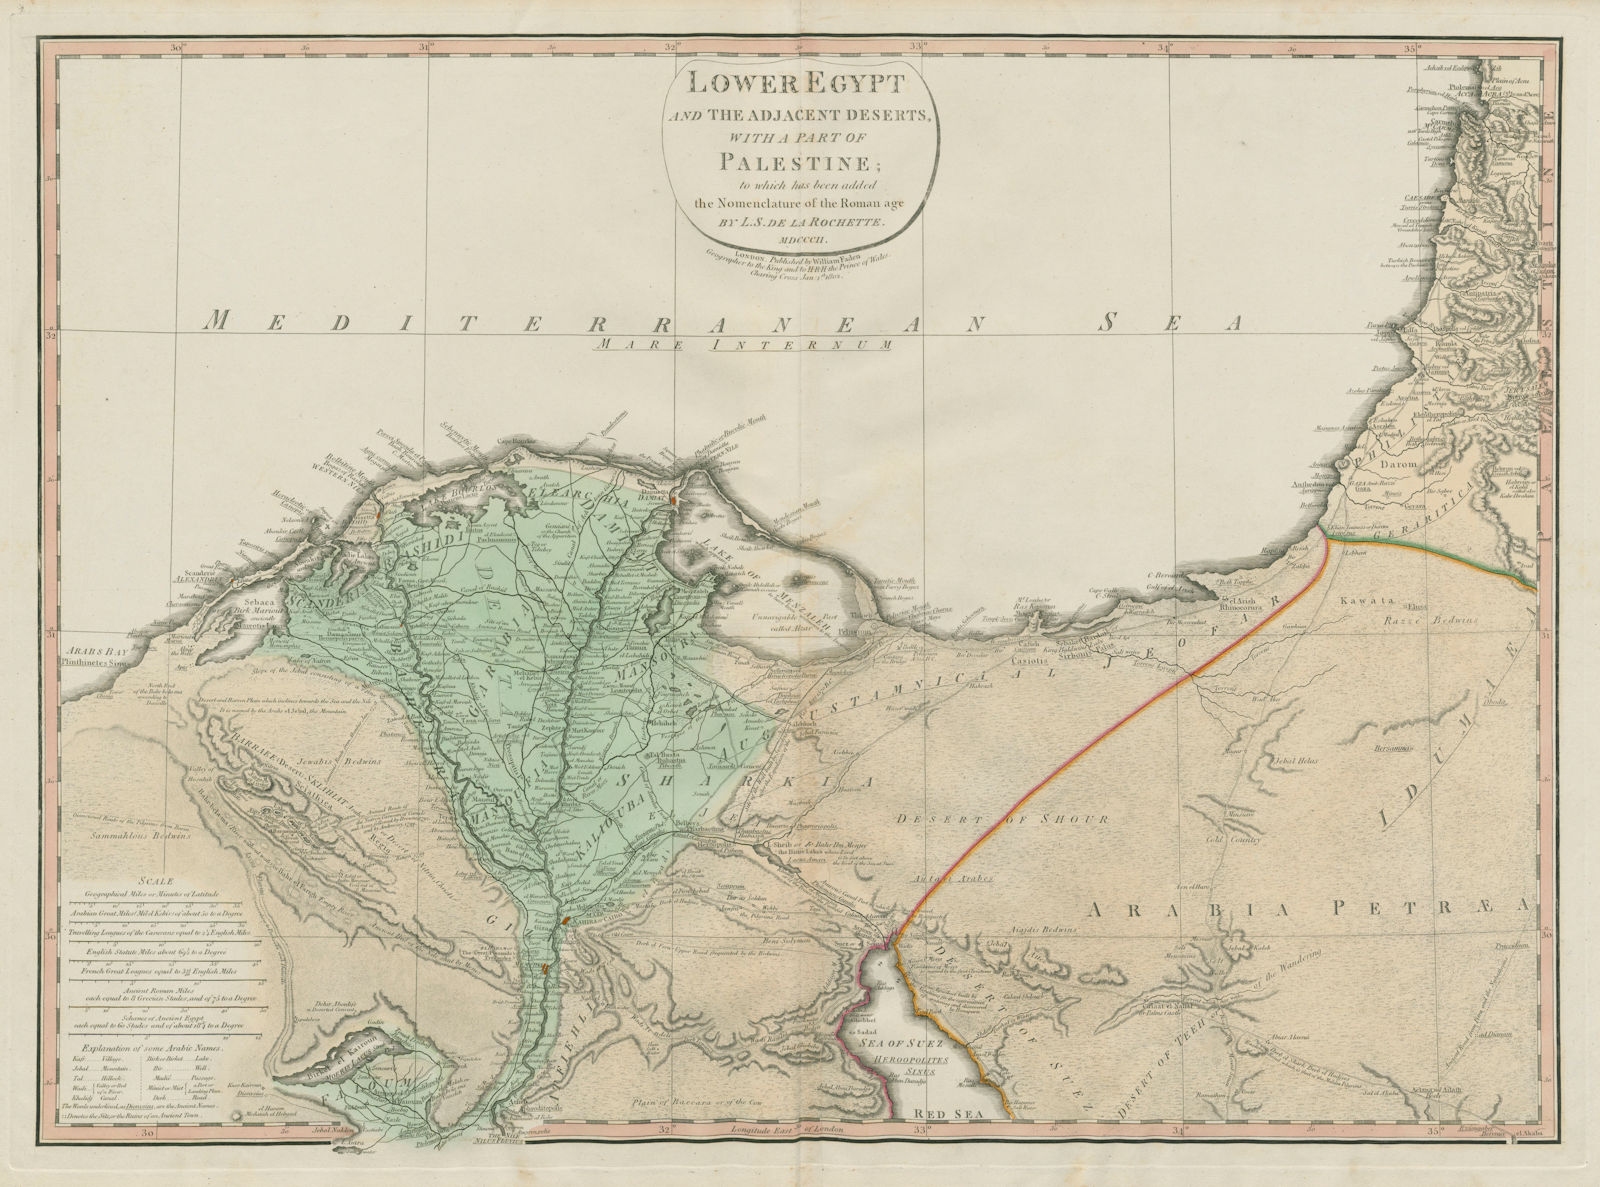 Associate Product Lower Egypt & the adjacent deserts [&] Palestine… DELAROCHETTE / FADEN 1802 map